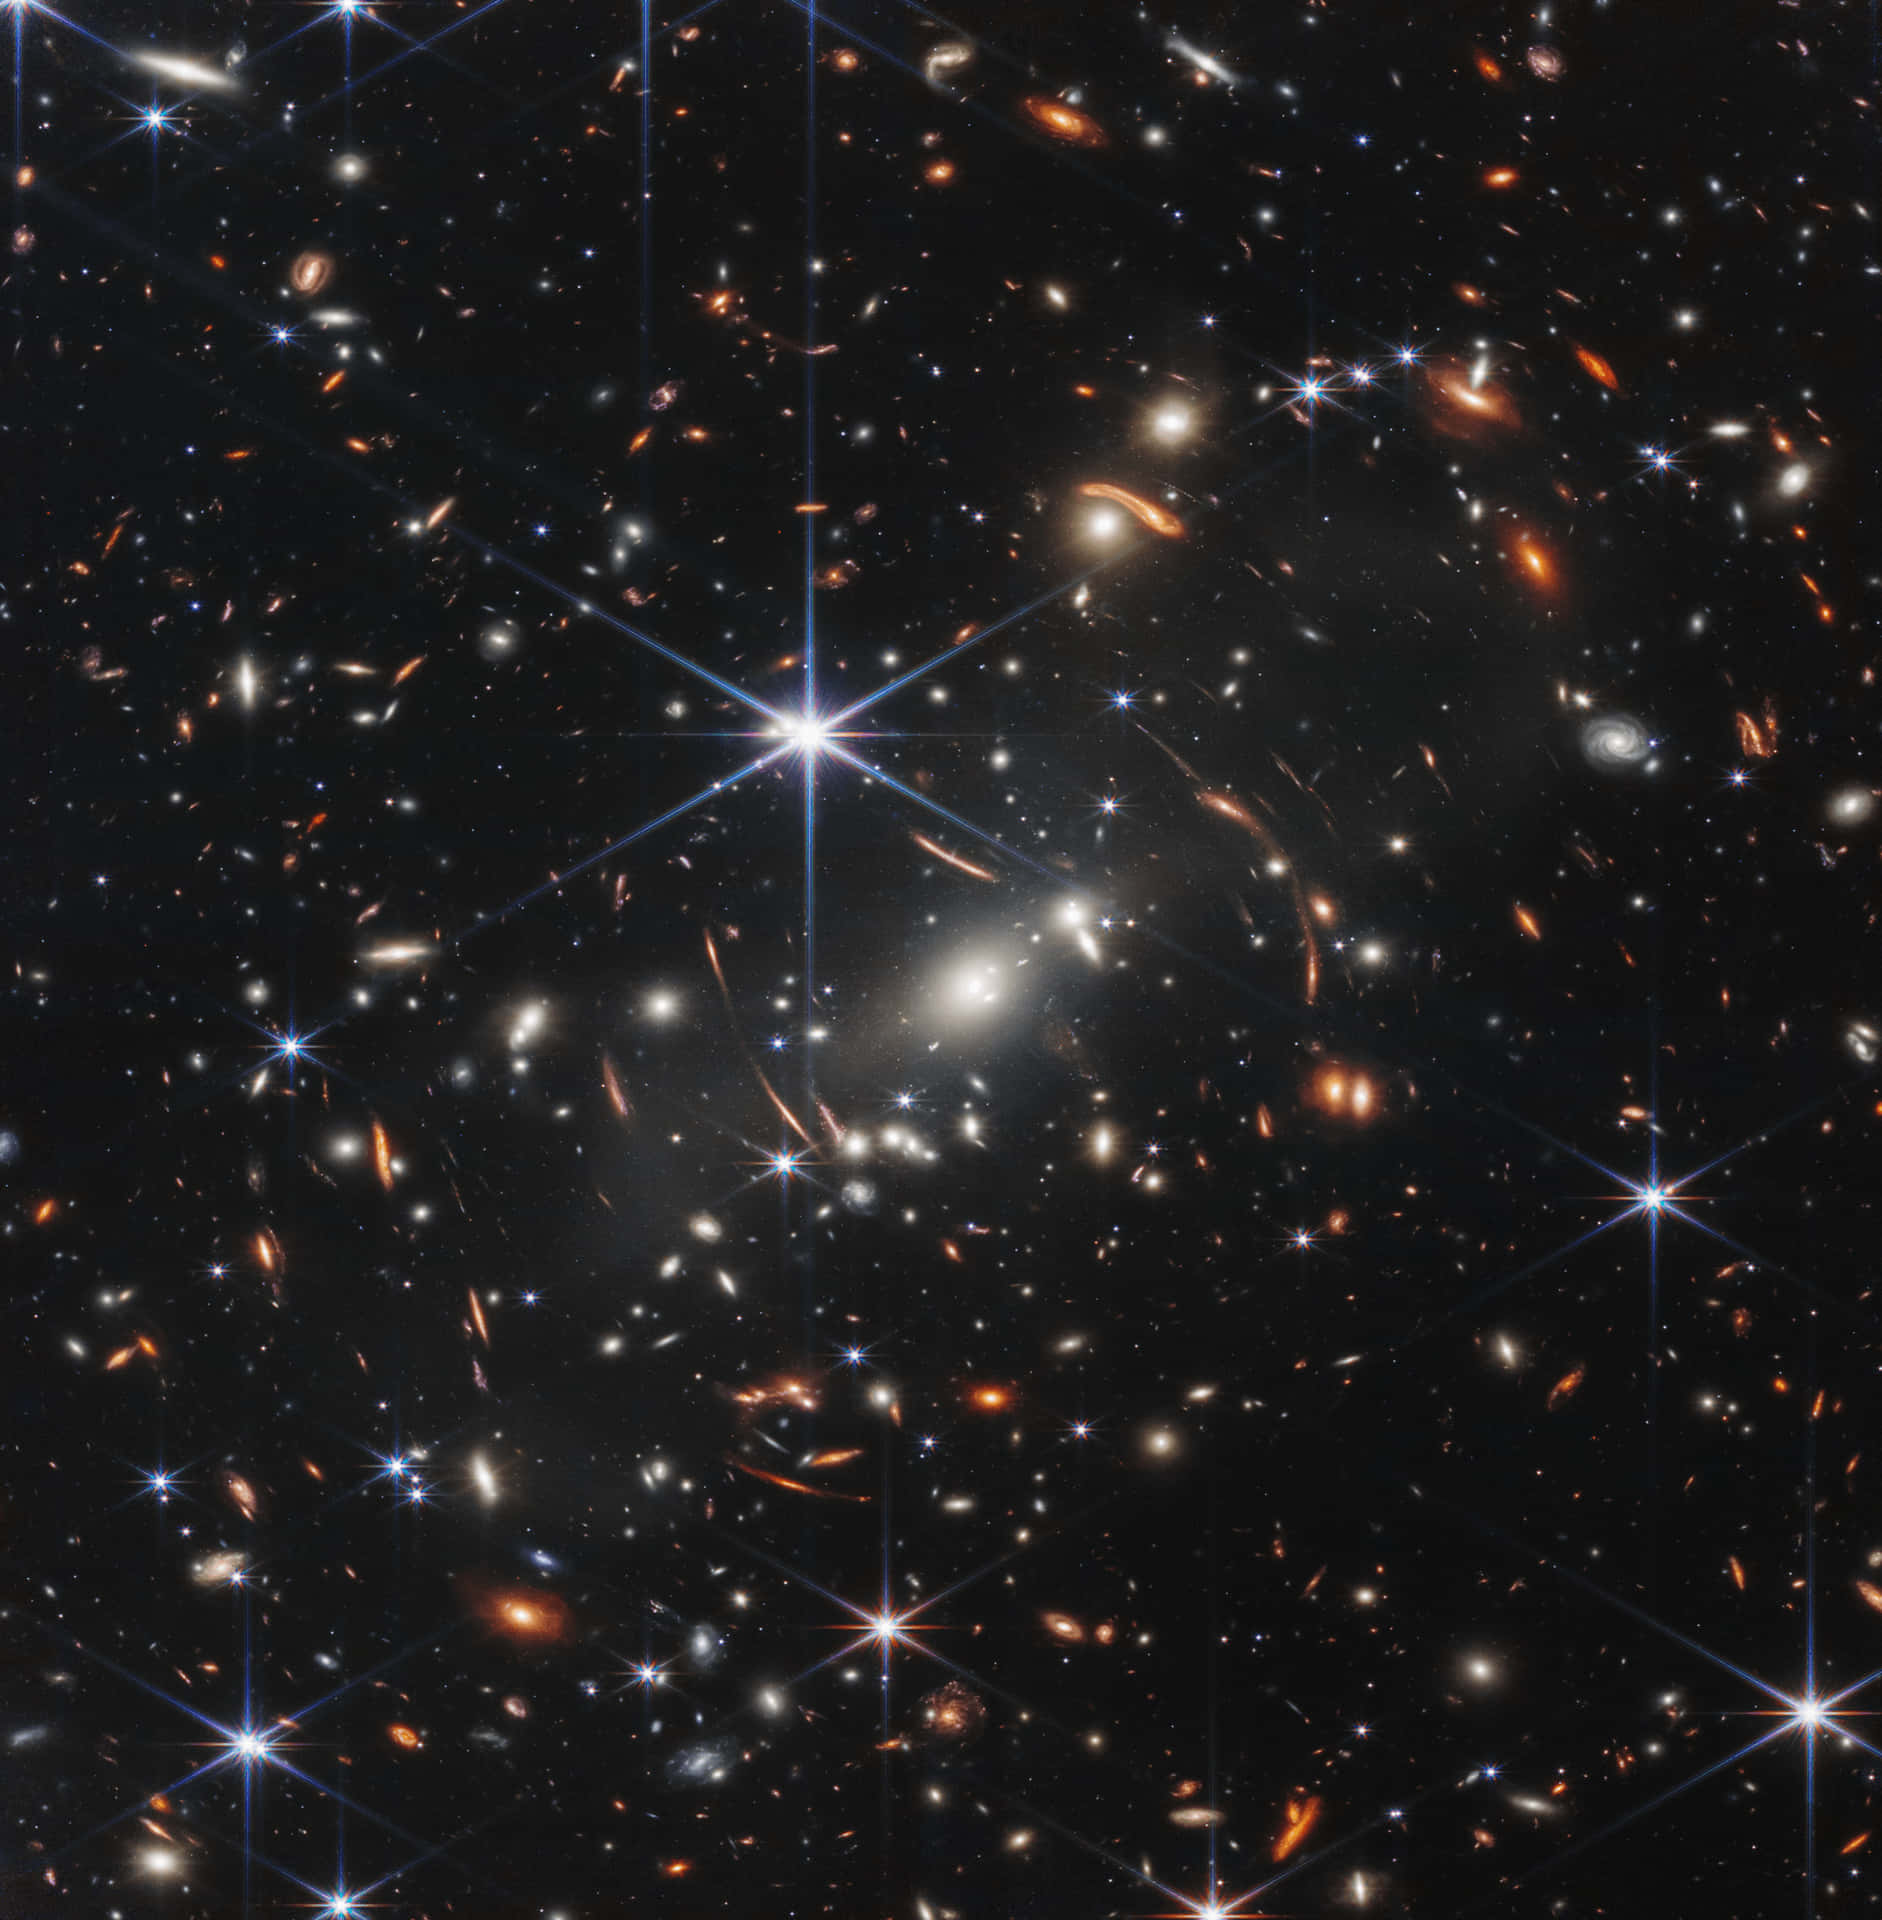 Fantastisk udsigt til galaks M75 fra Hubble Rumteleskopet. Wallpaper